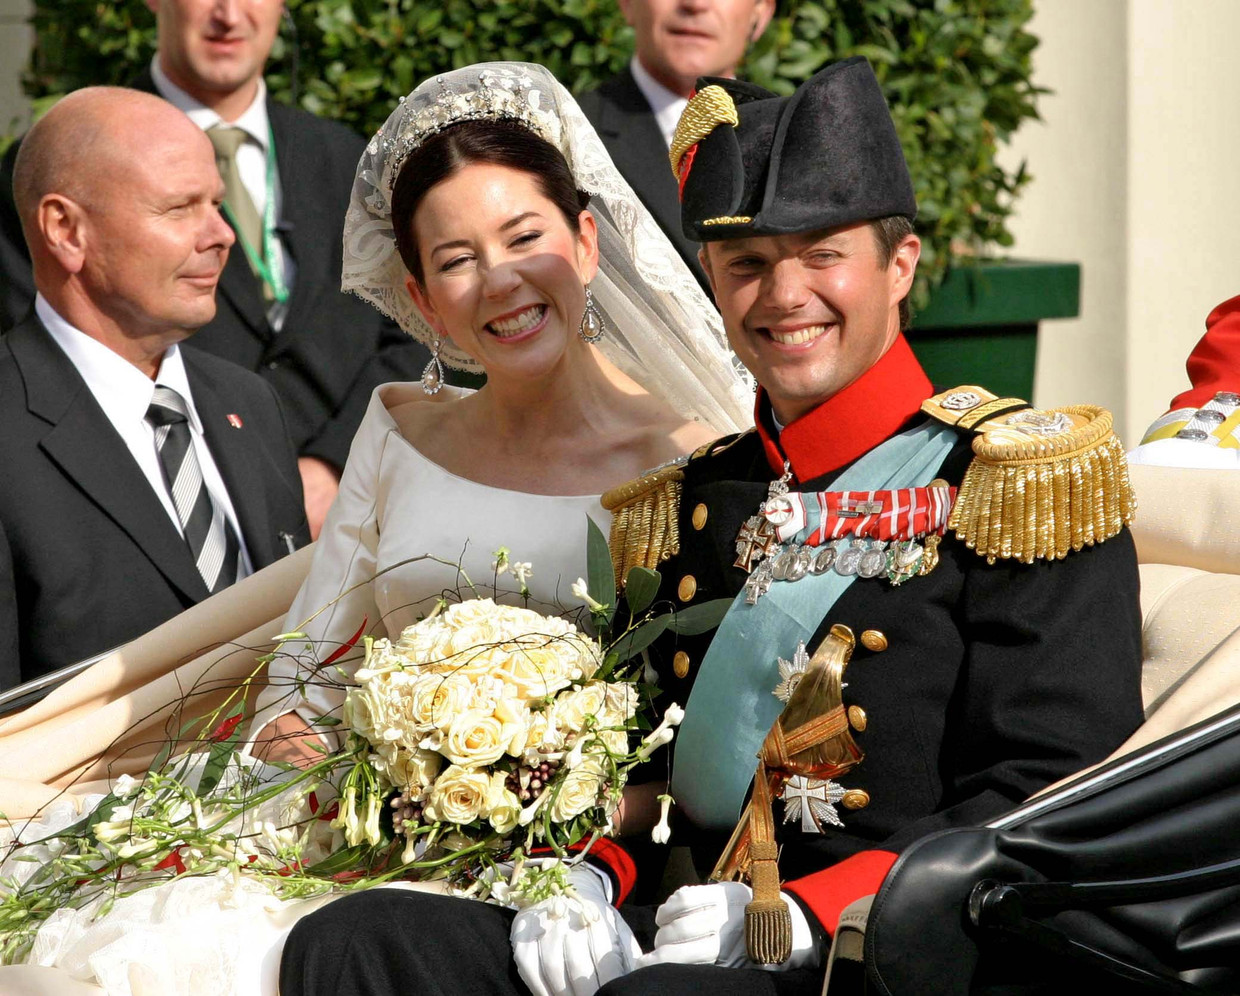 Boda del rey Federico y la reina María Donaldson, 14 de mayo de 2004. Imagen NL Imagen / Bernard Ruebsamen